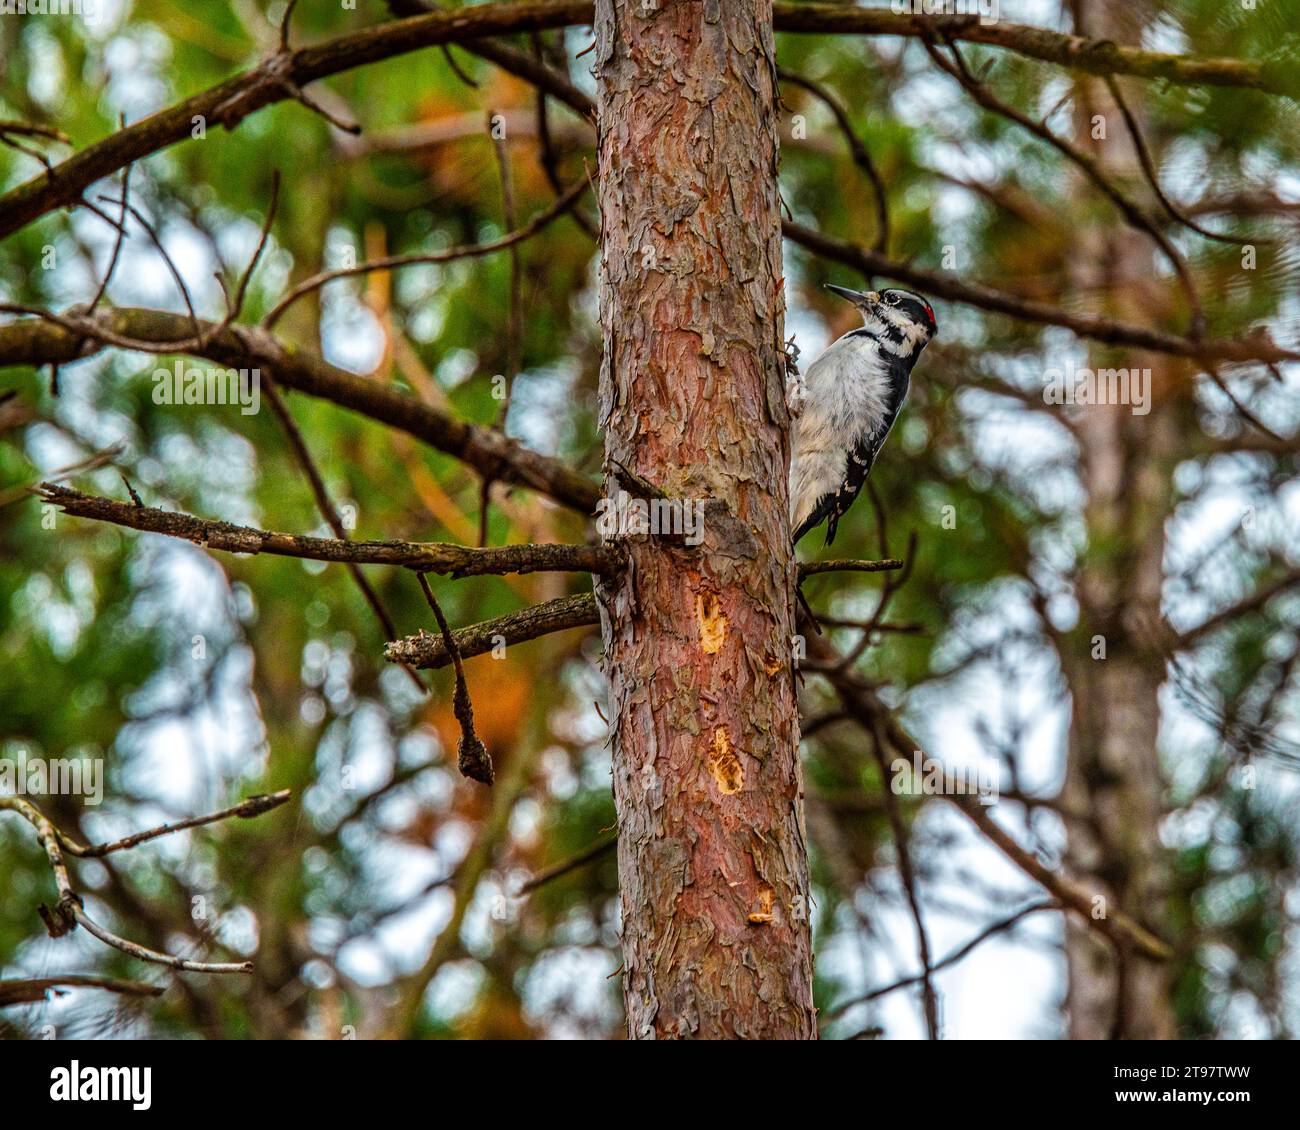 Speckvogel. Im kanadischen Wald, im Busch, traf ich einen Specht, einen Vogel, der hart arbeitete und ein bestimmtes Klopfgeräusch machte. Stockfoto